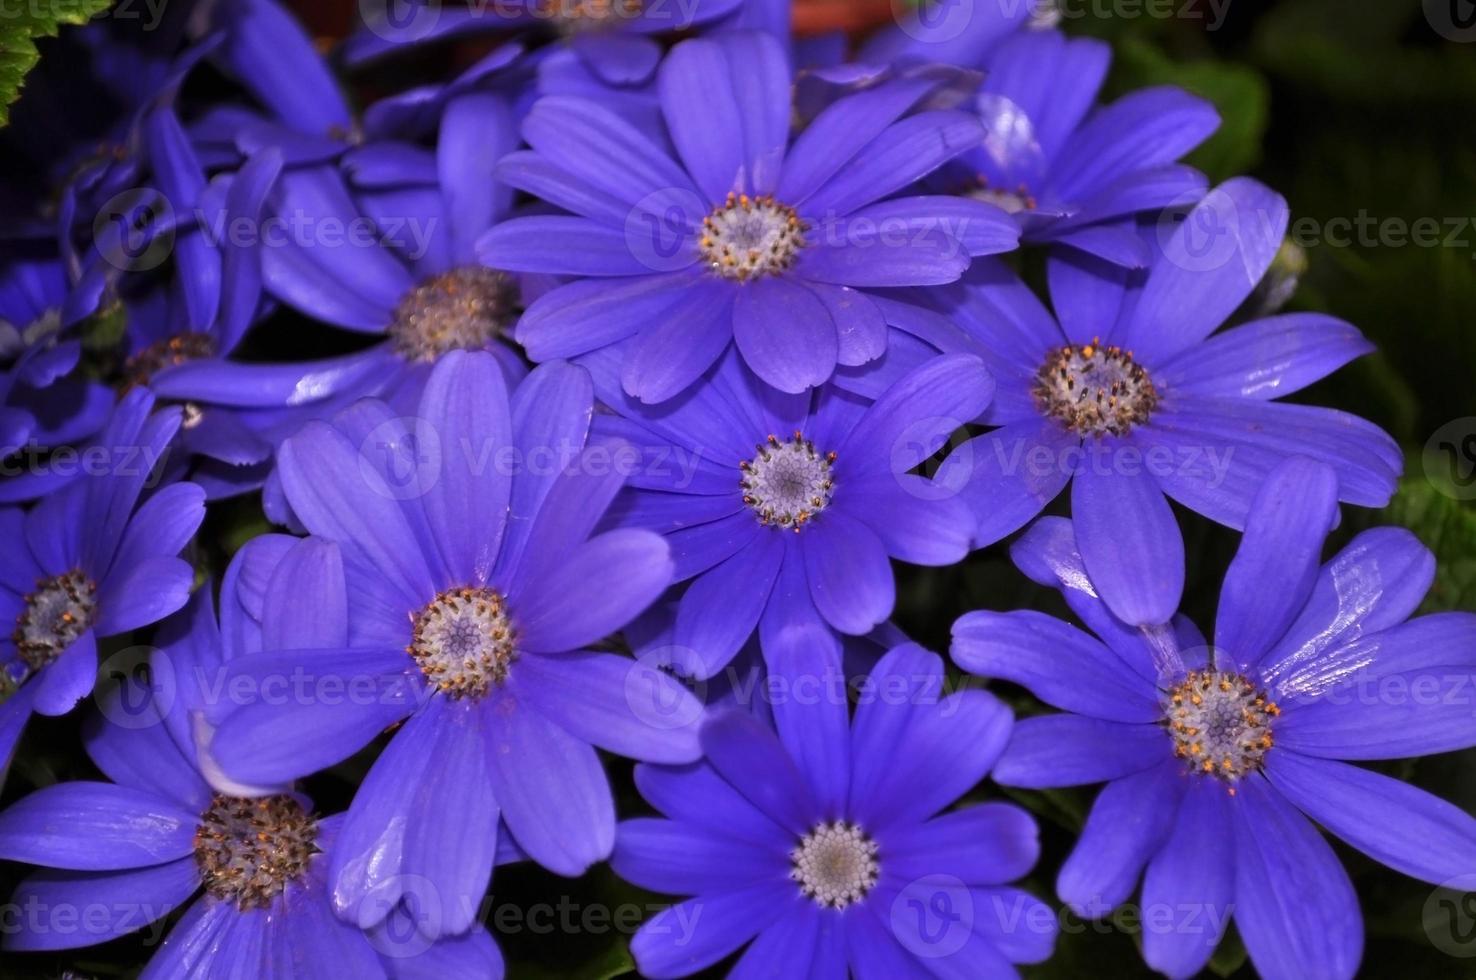 zwaan rivier- madeliefje of compositae ook bekend net zo sierlijk blauw bloemen, ingemaakt blauw pericallis foto